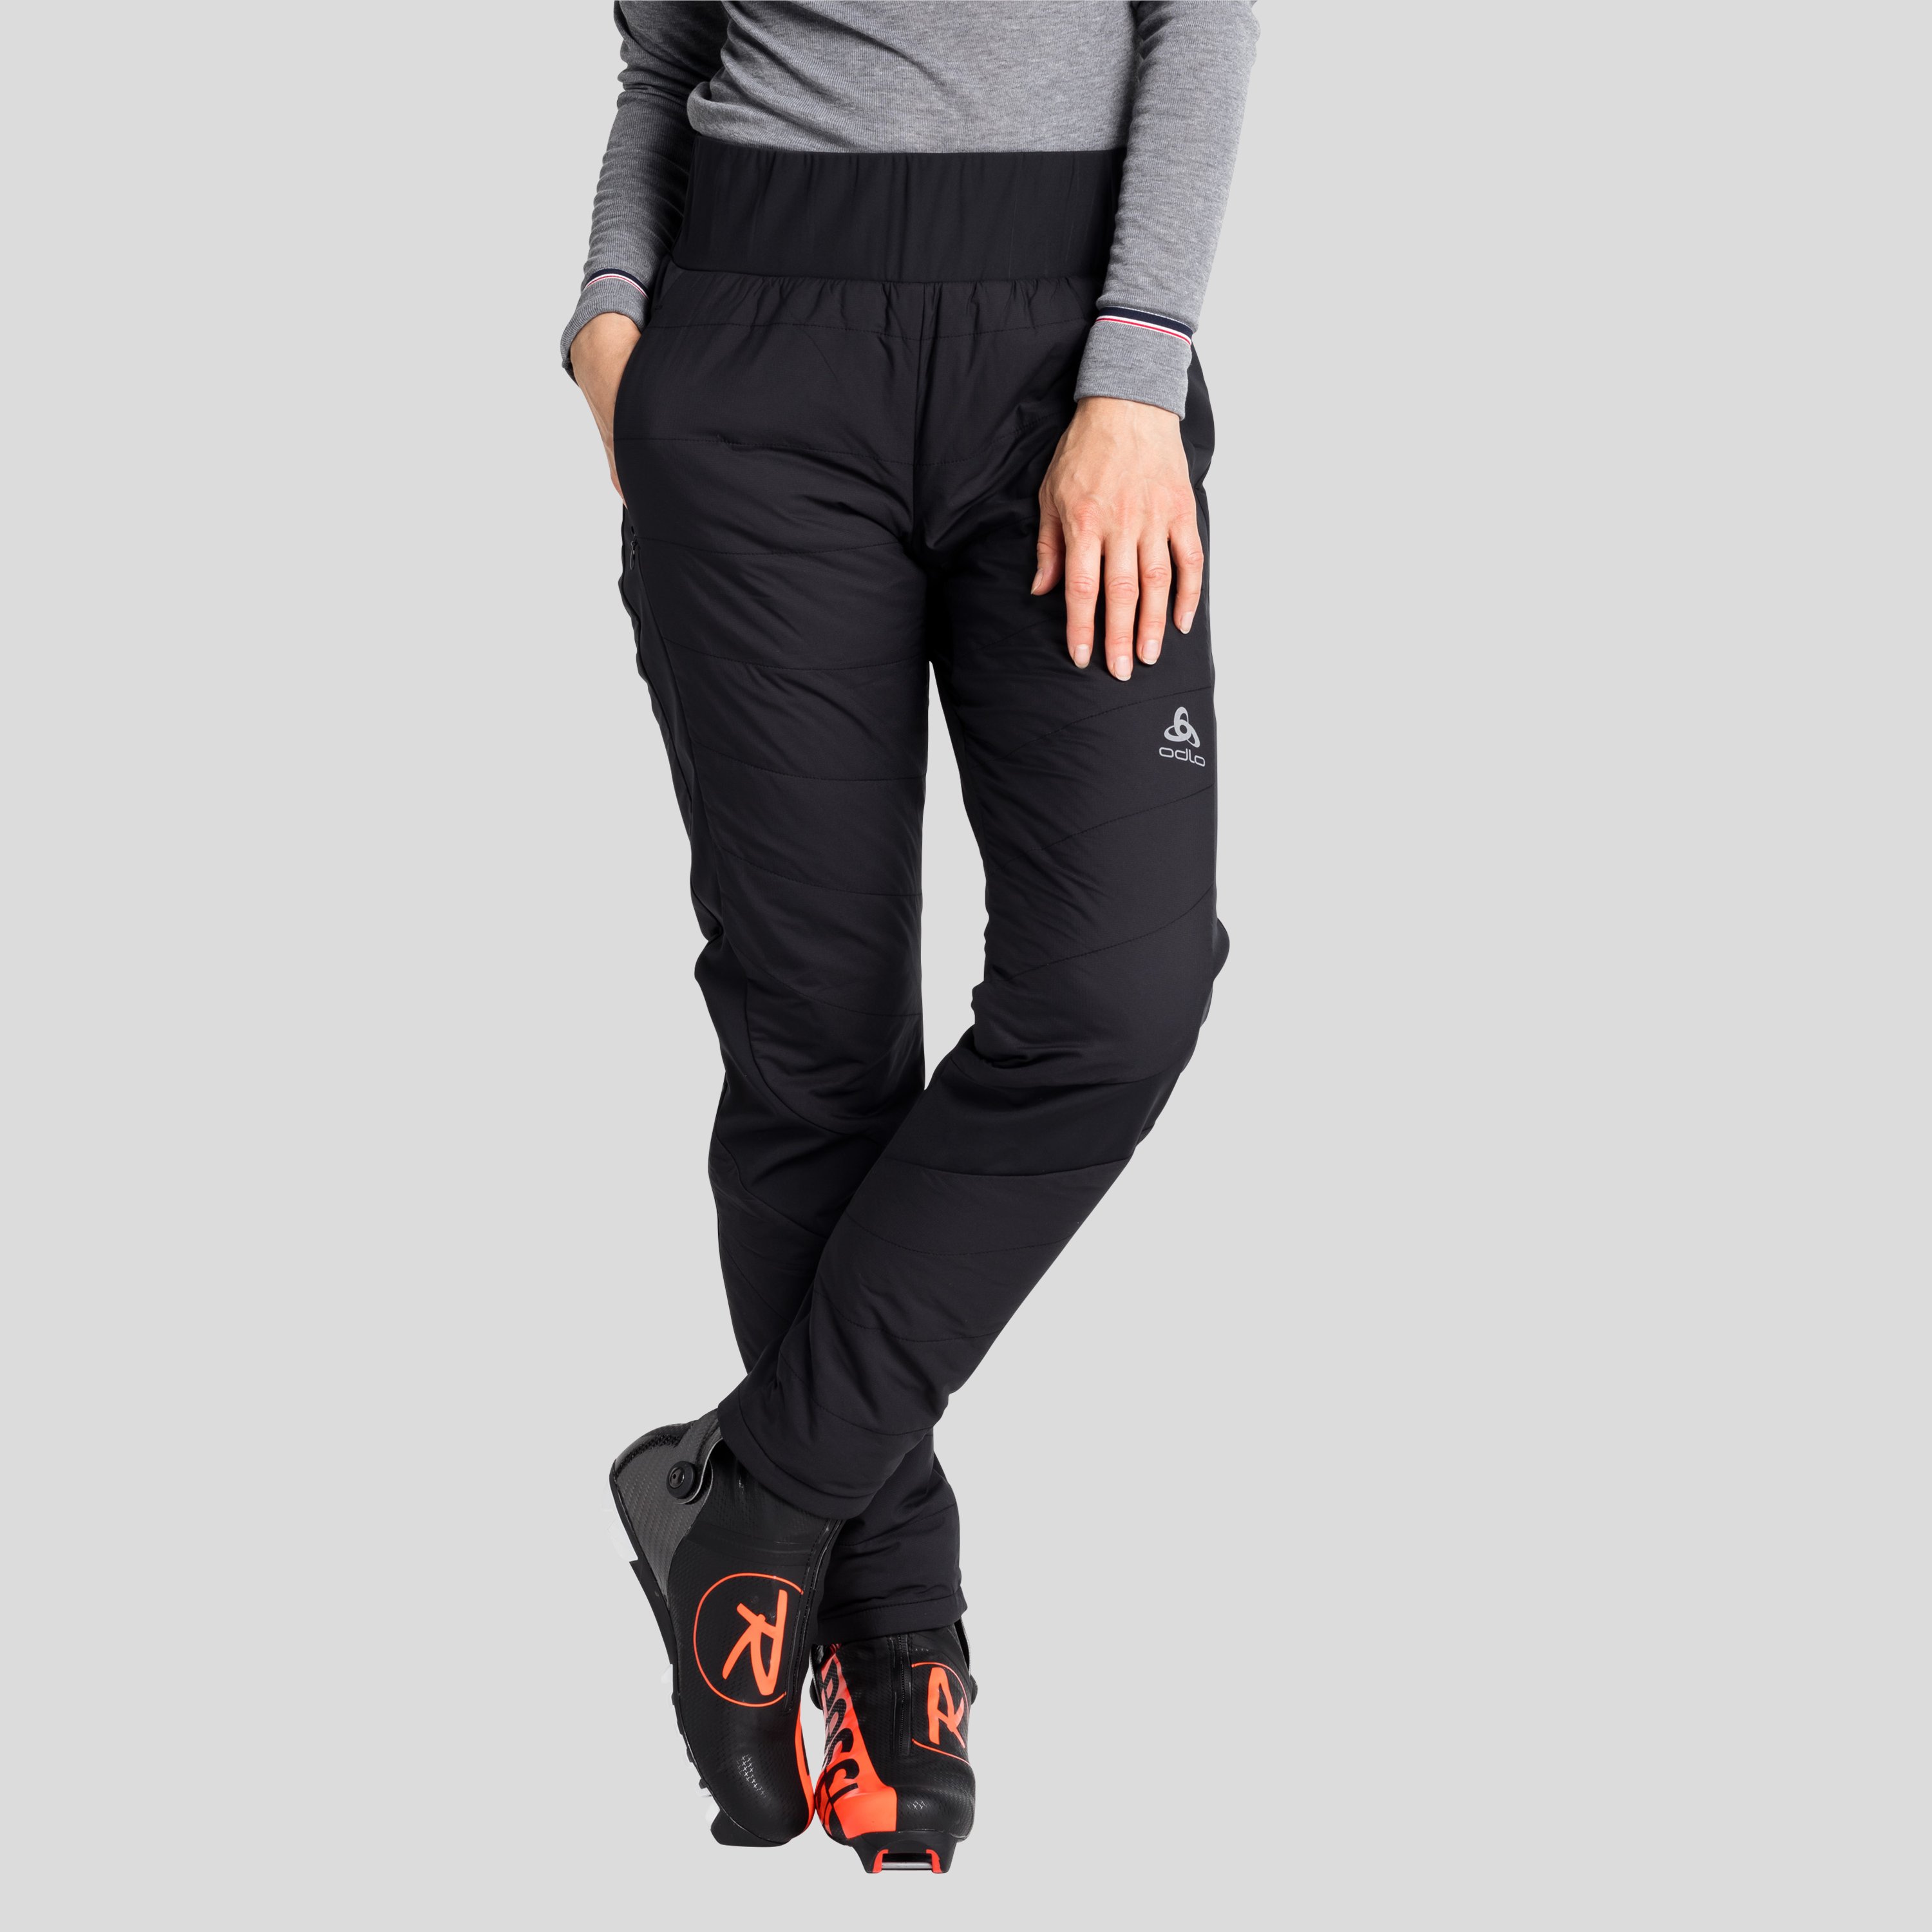 ODLO S-Thermic Langlaufhose für Damen, XL, schwarz